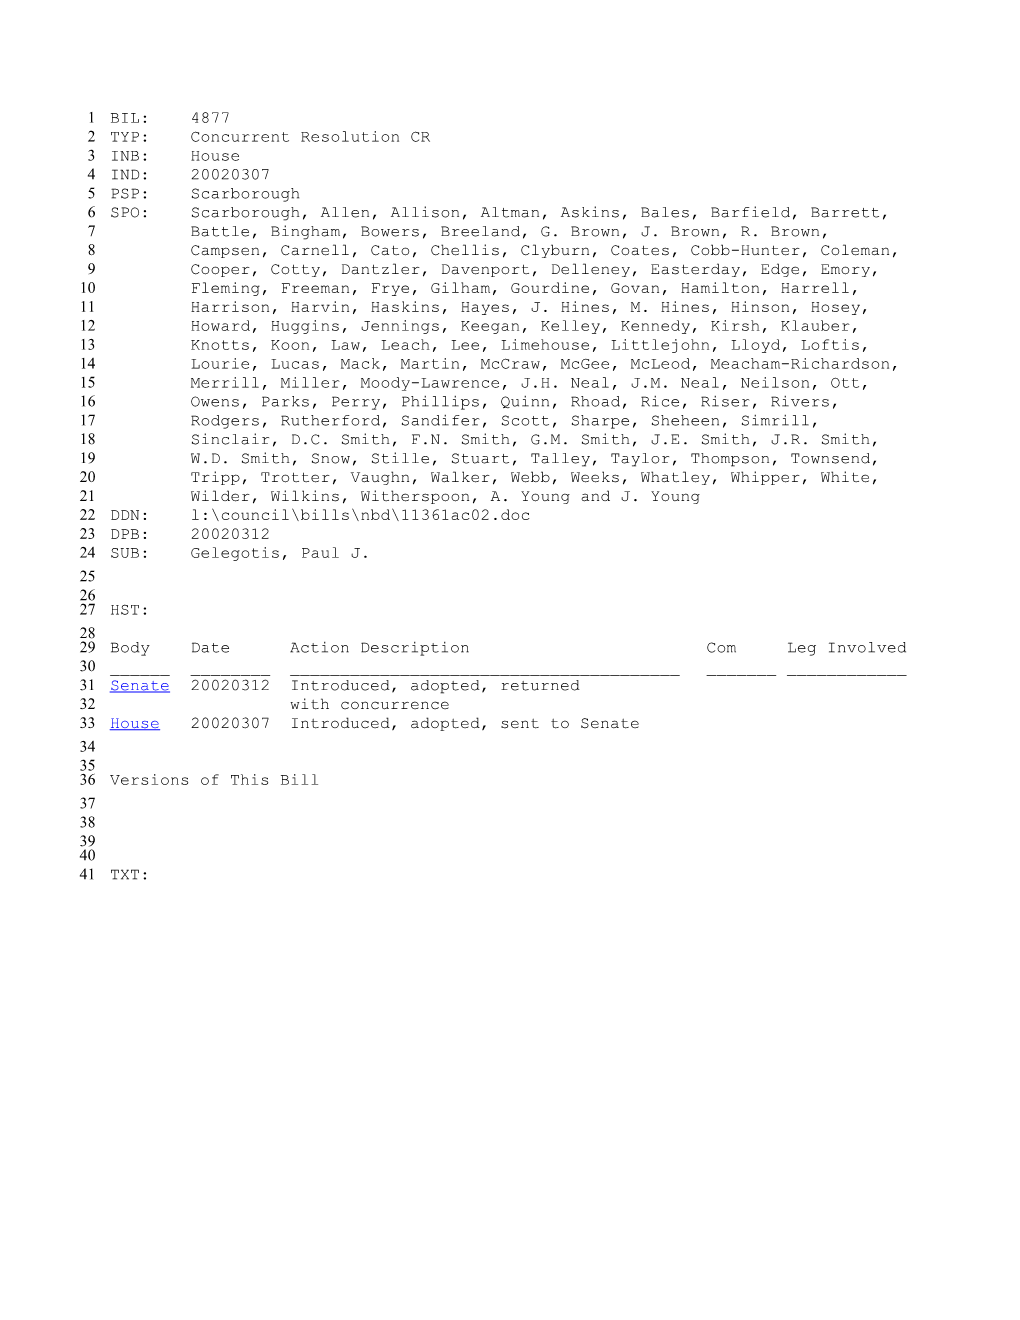 2001-2002 Bill 4877: Gelegotis, Paul J. - South Carolina Legislature Online